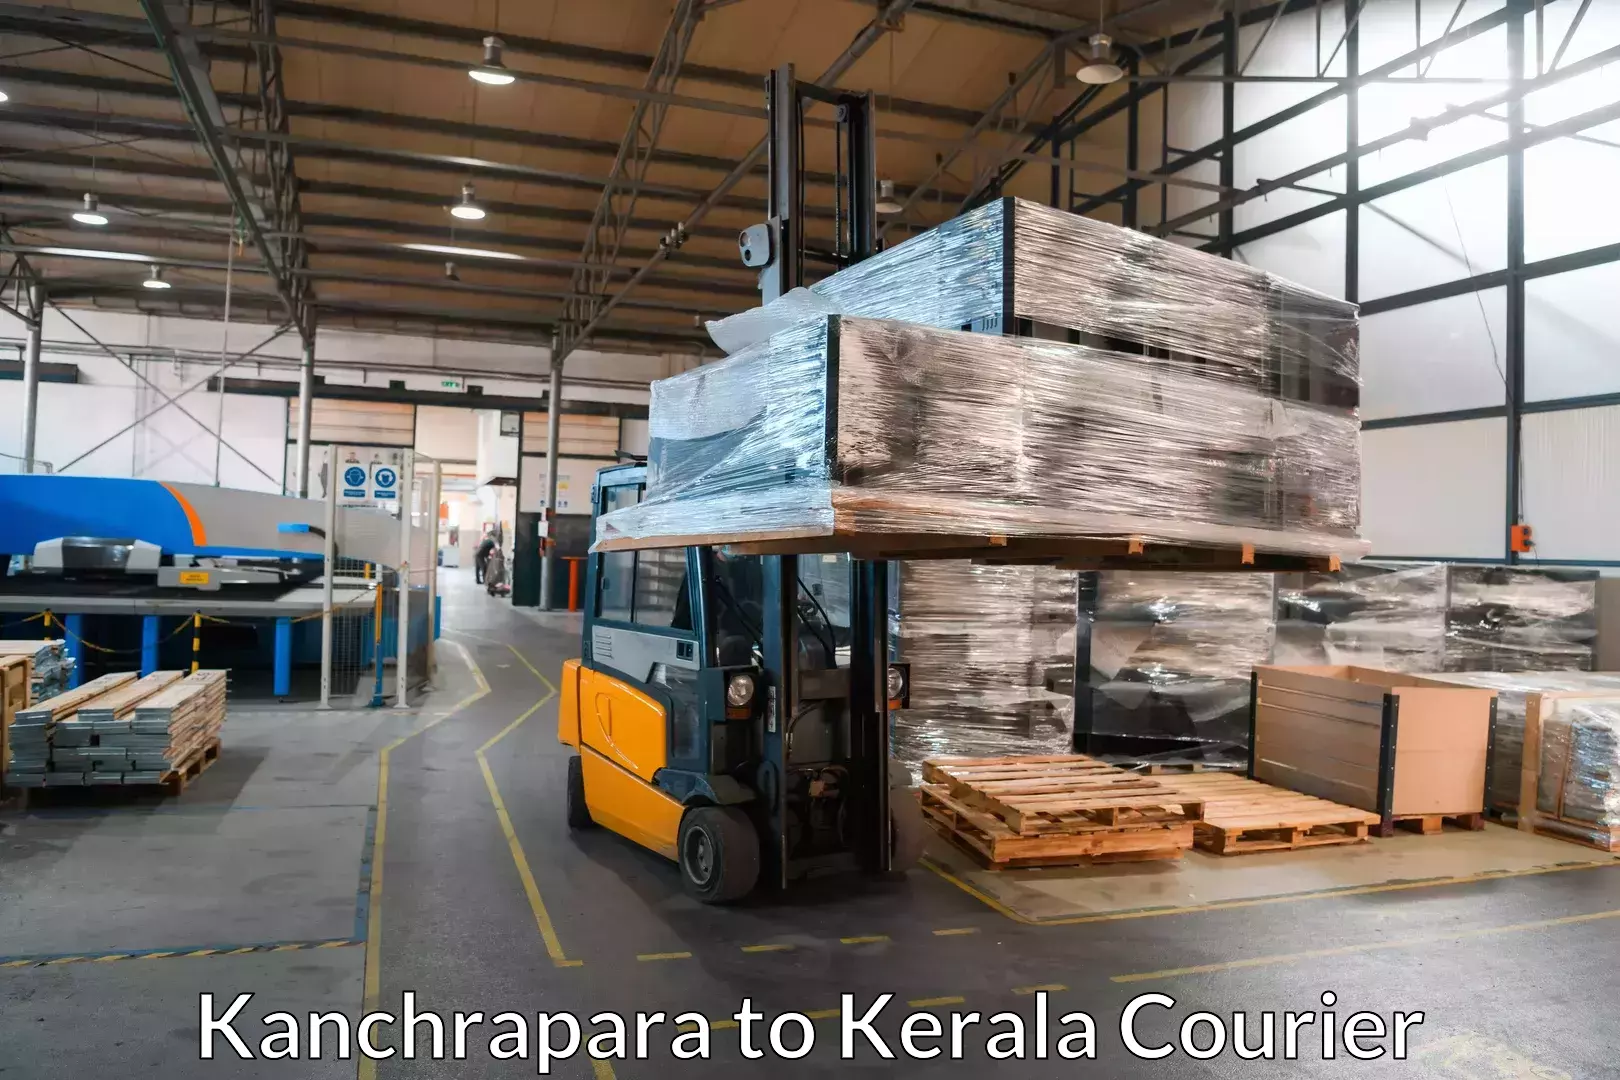 Furniture transport experts Kanchrapara to Trivandrum